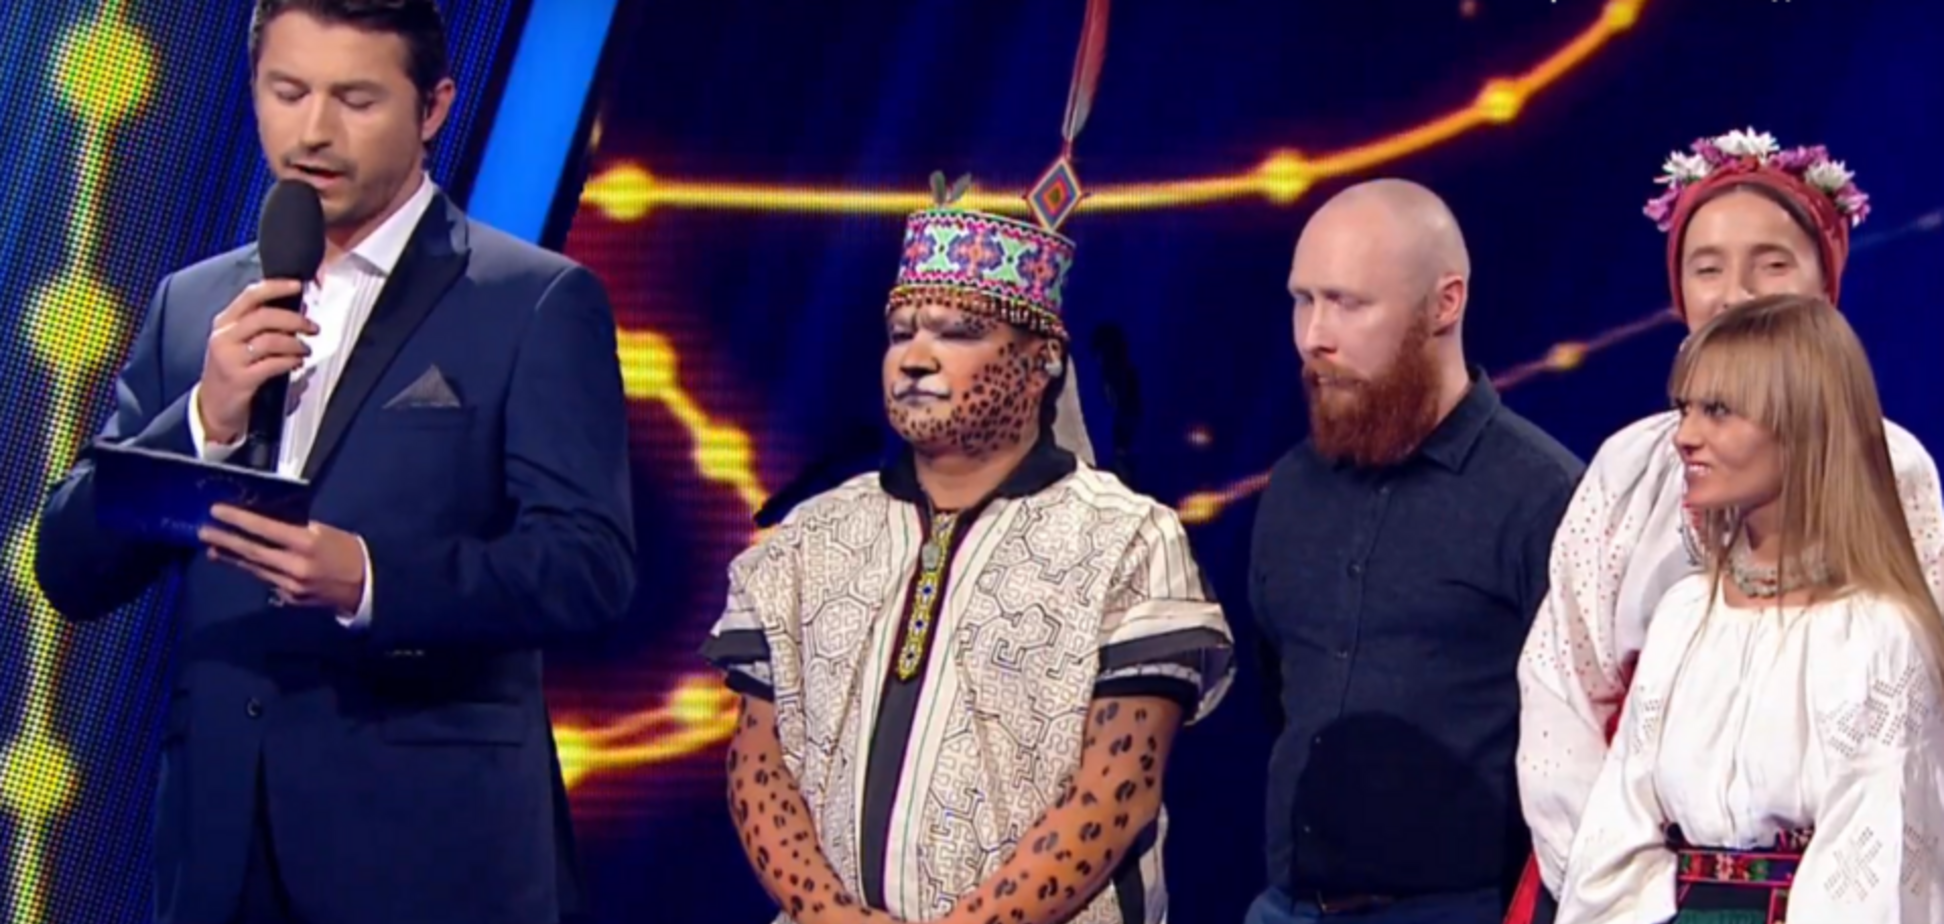 'Песня про матку': участница Нацотбора на Евровидение испугала сеть выступлением с шаманом